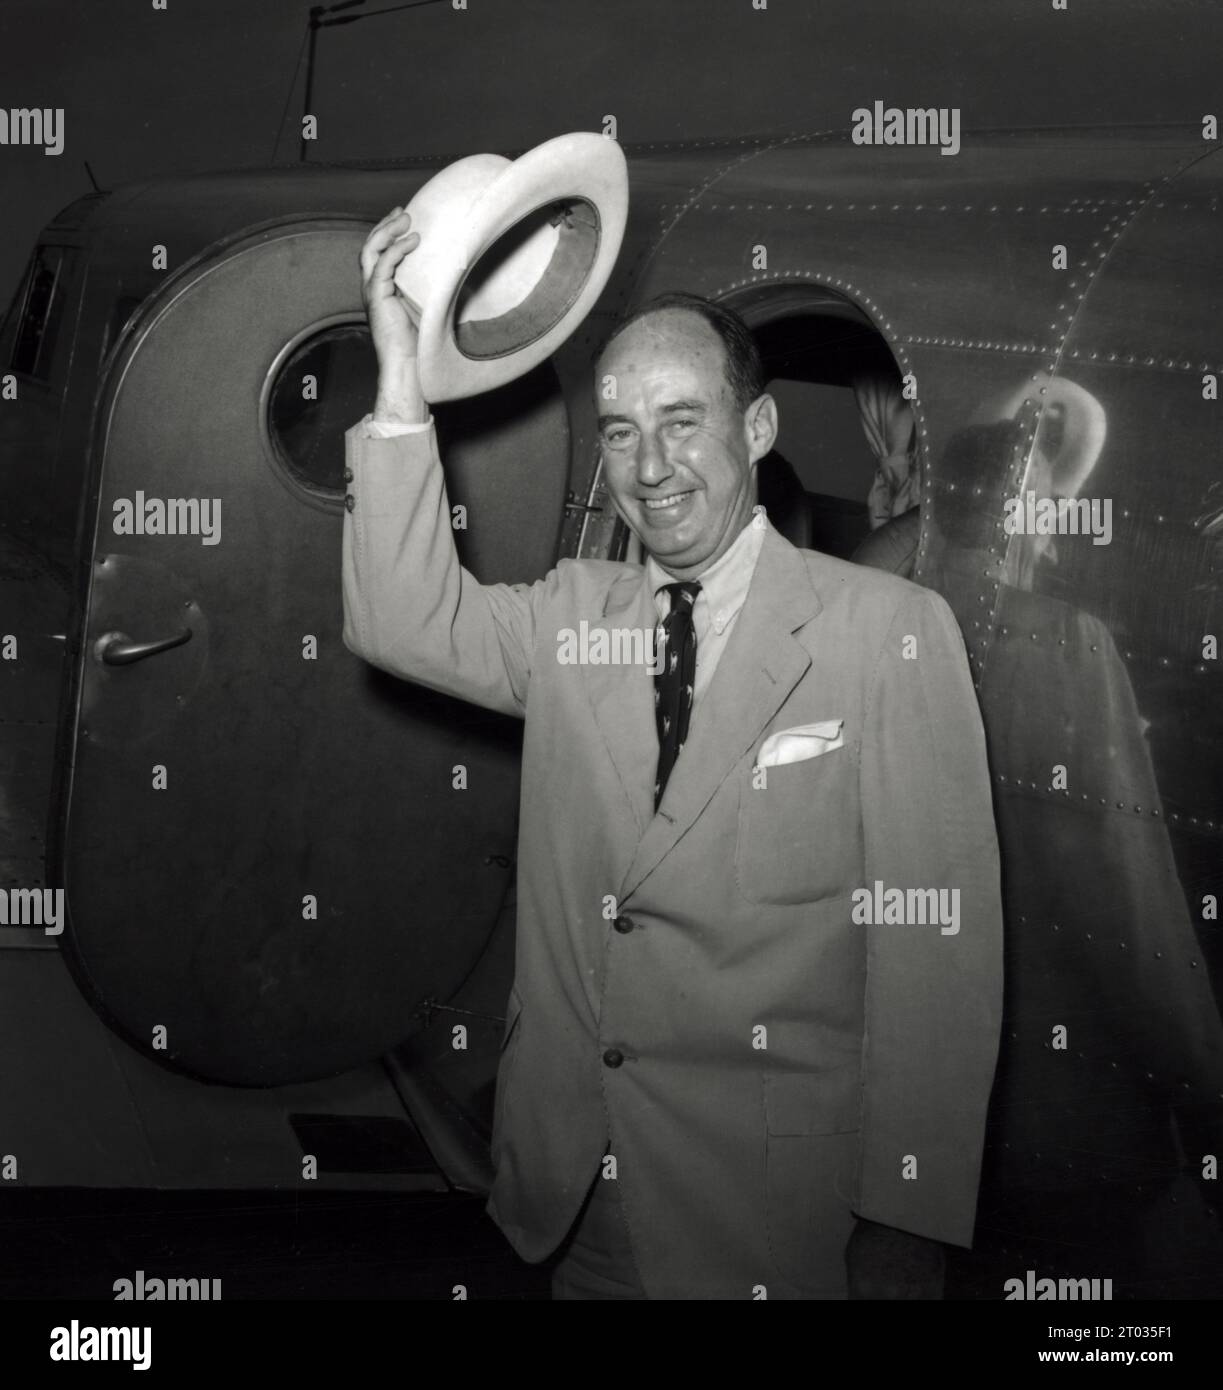 Candidat à la présidence Adlai Stevenson à la Convention nationale démocrate, 1952 Banque D'Images